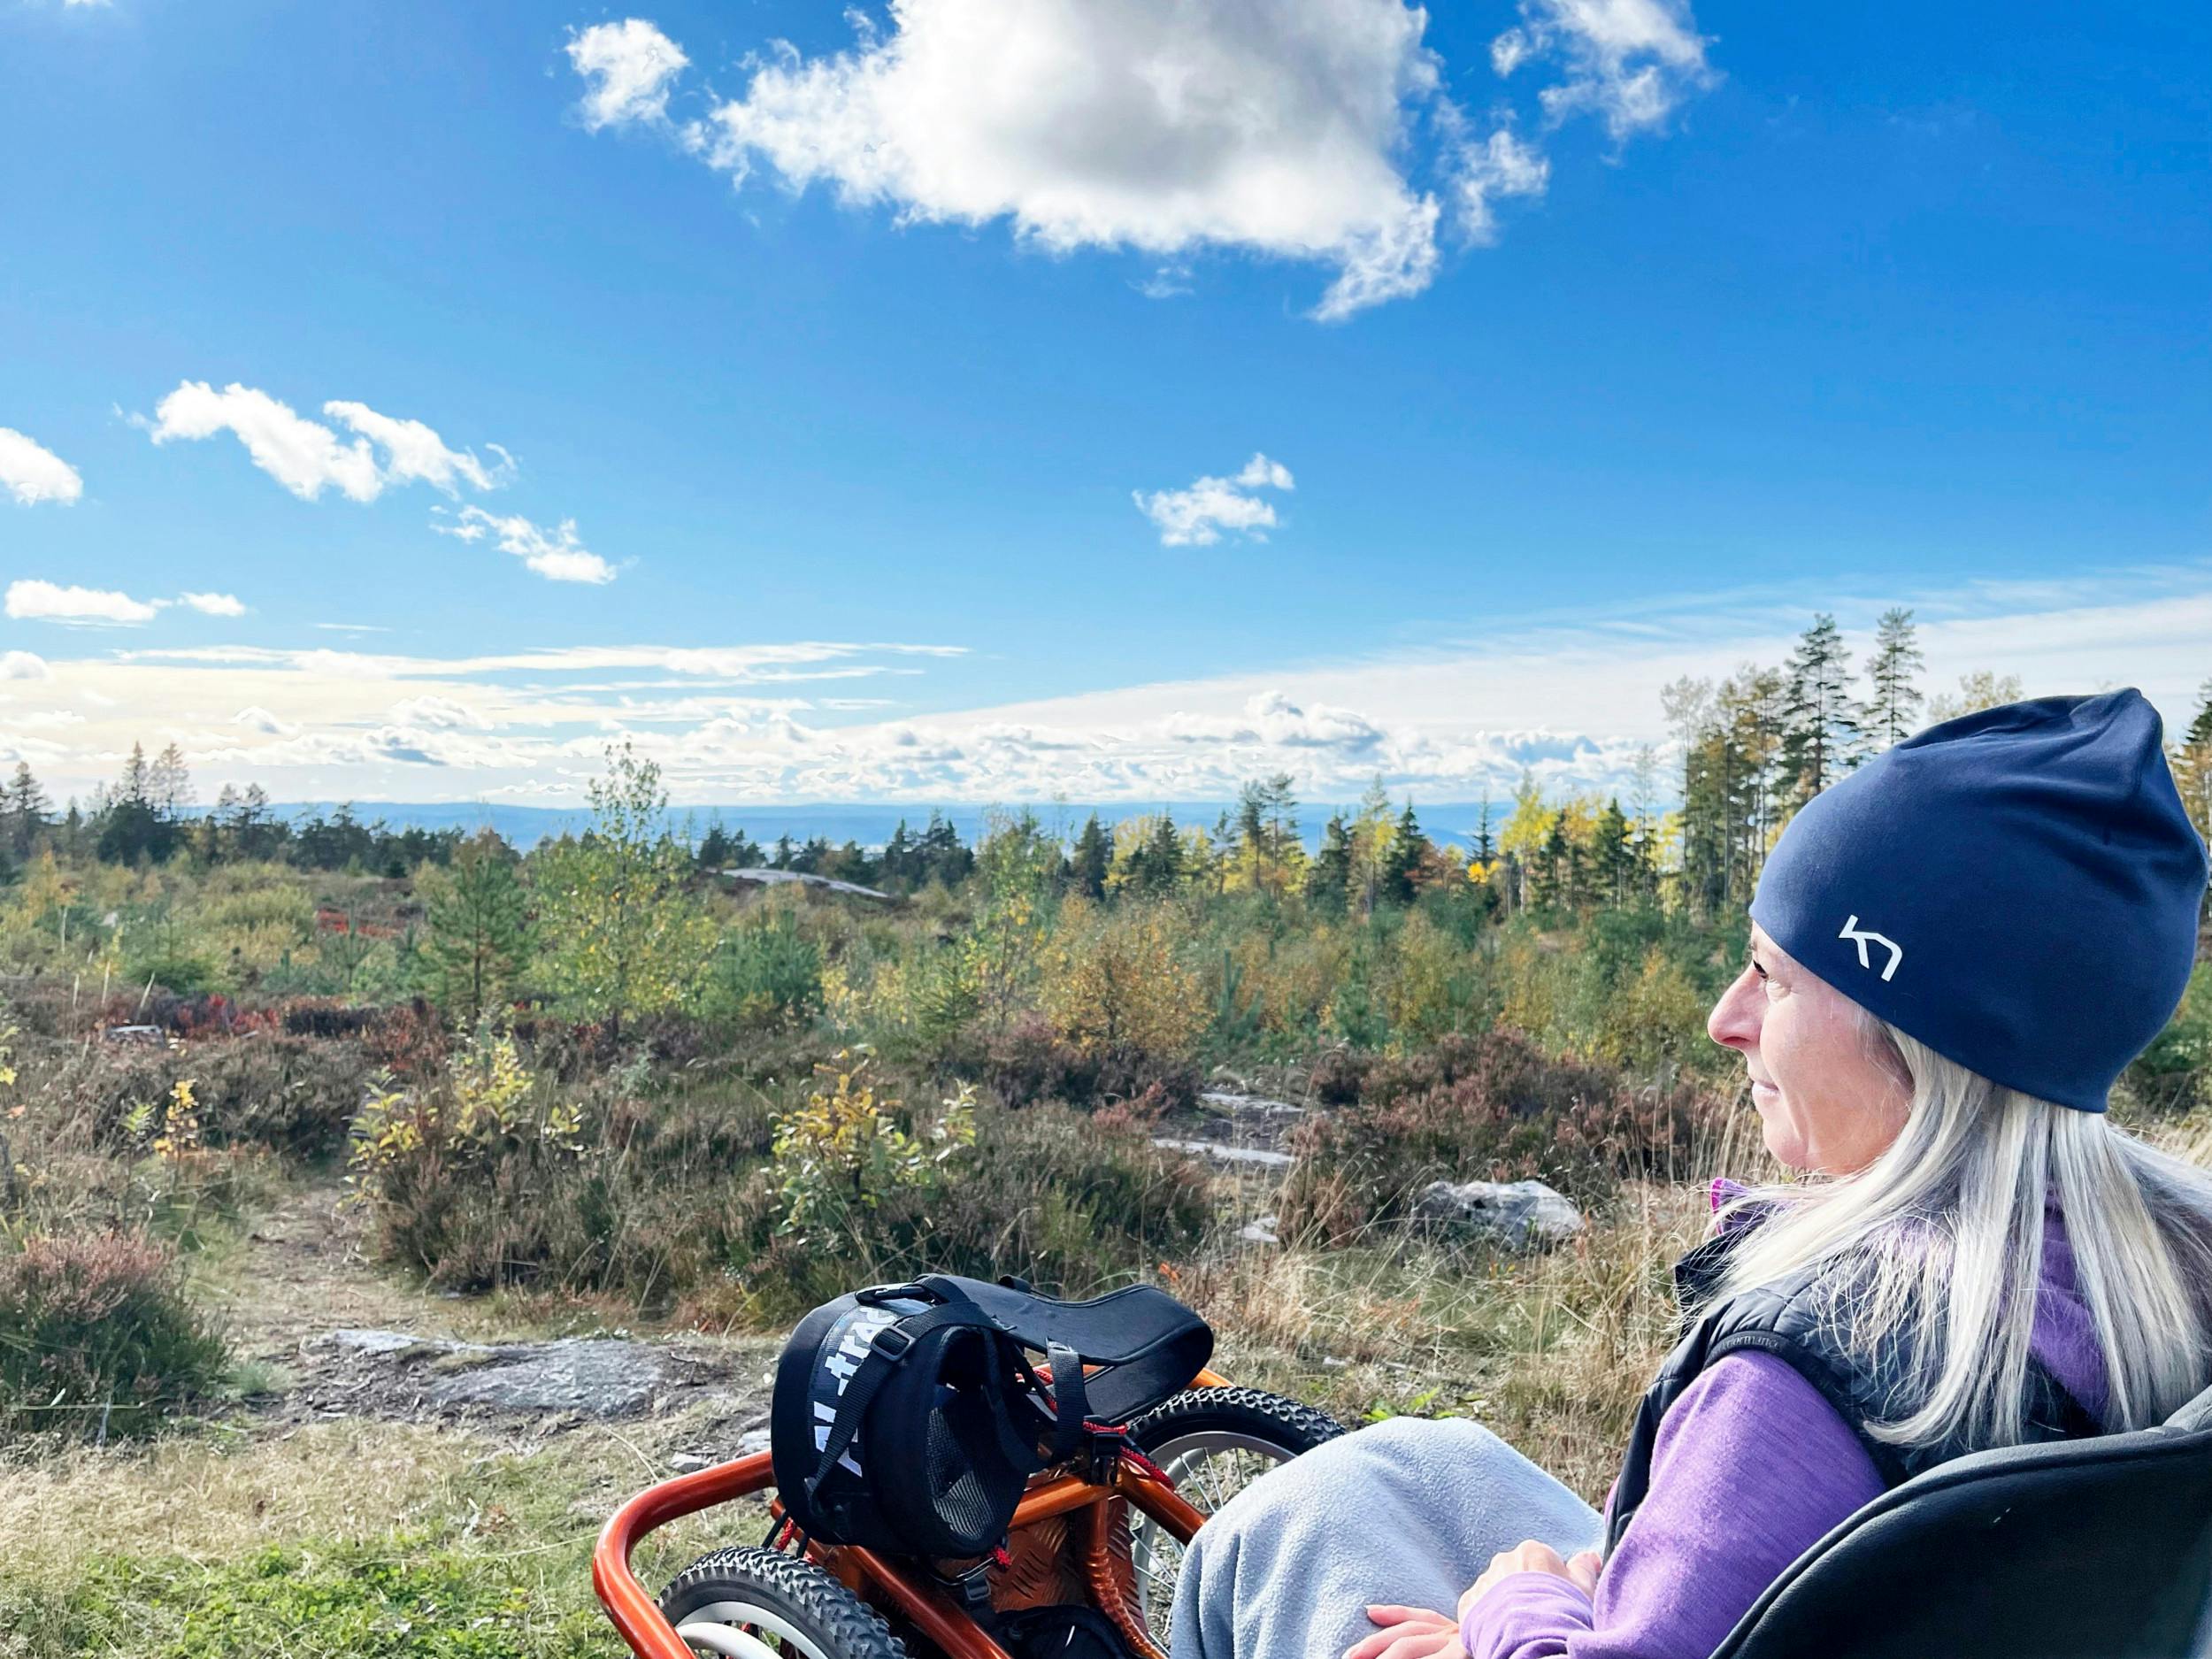 Livet har været urimeligt for Hanne, efter hun blev ramt af ALS. Men midt i urimeligheden ser hun også lyspunkter. Som alle de mennesker omkring hende, som hjælper med, at hun stadig får oplevelser.